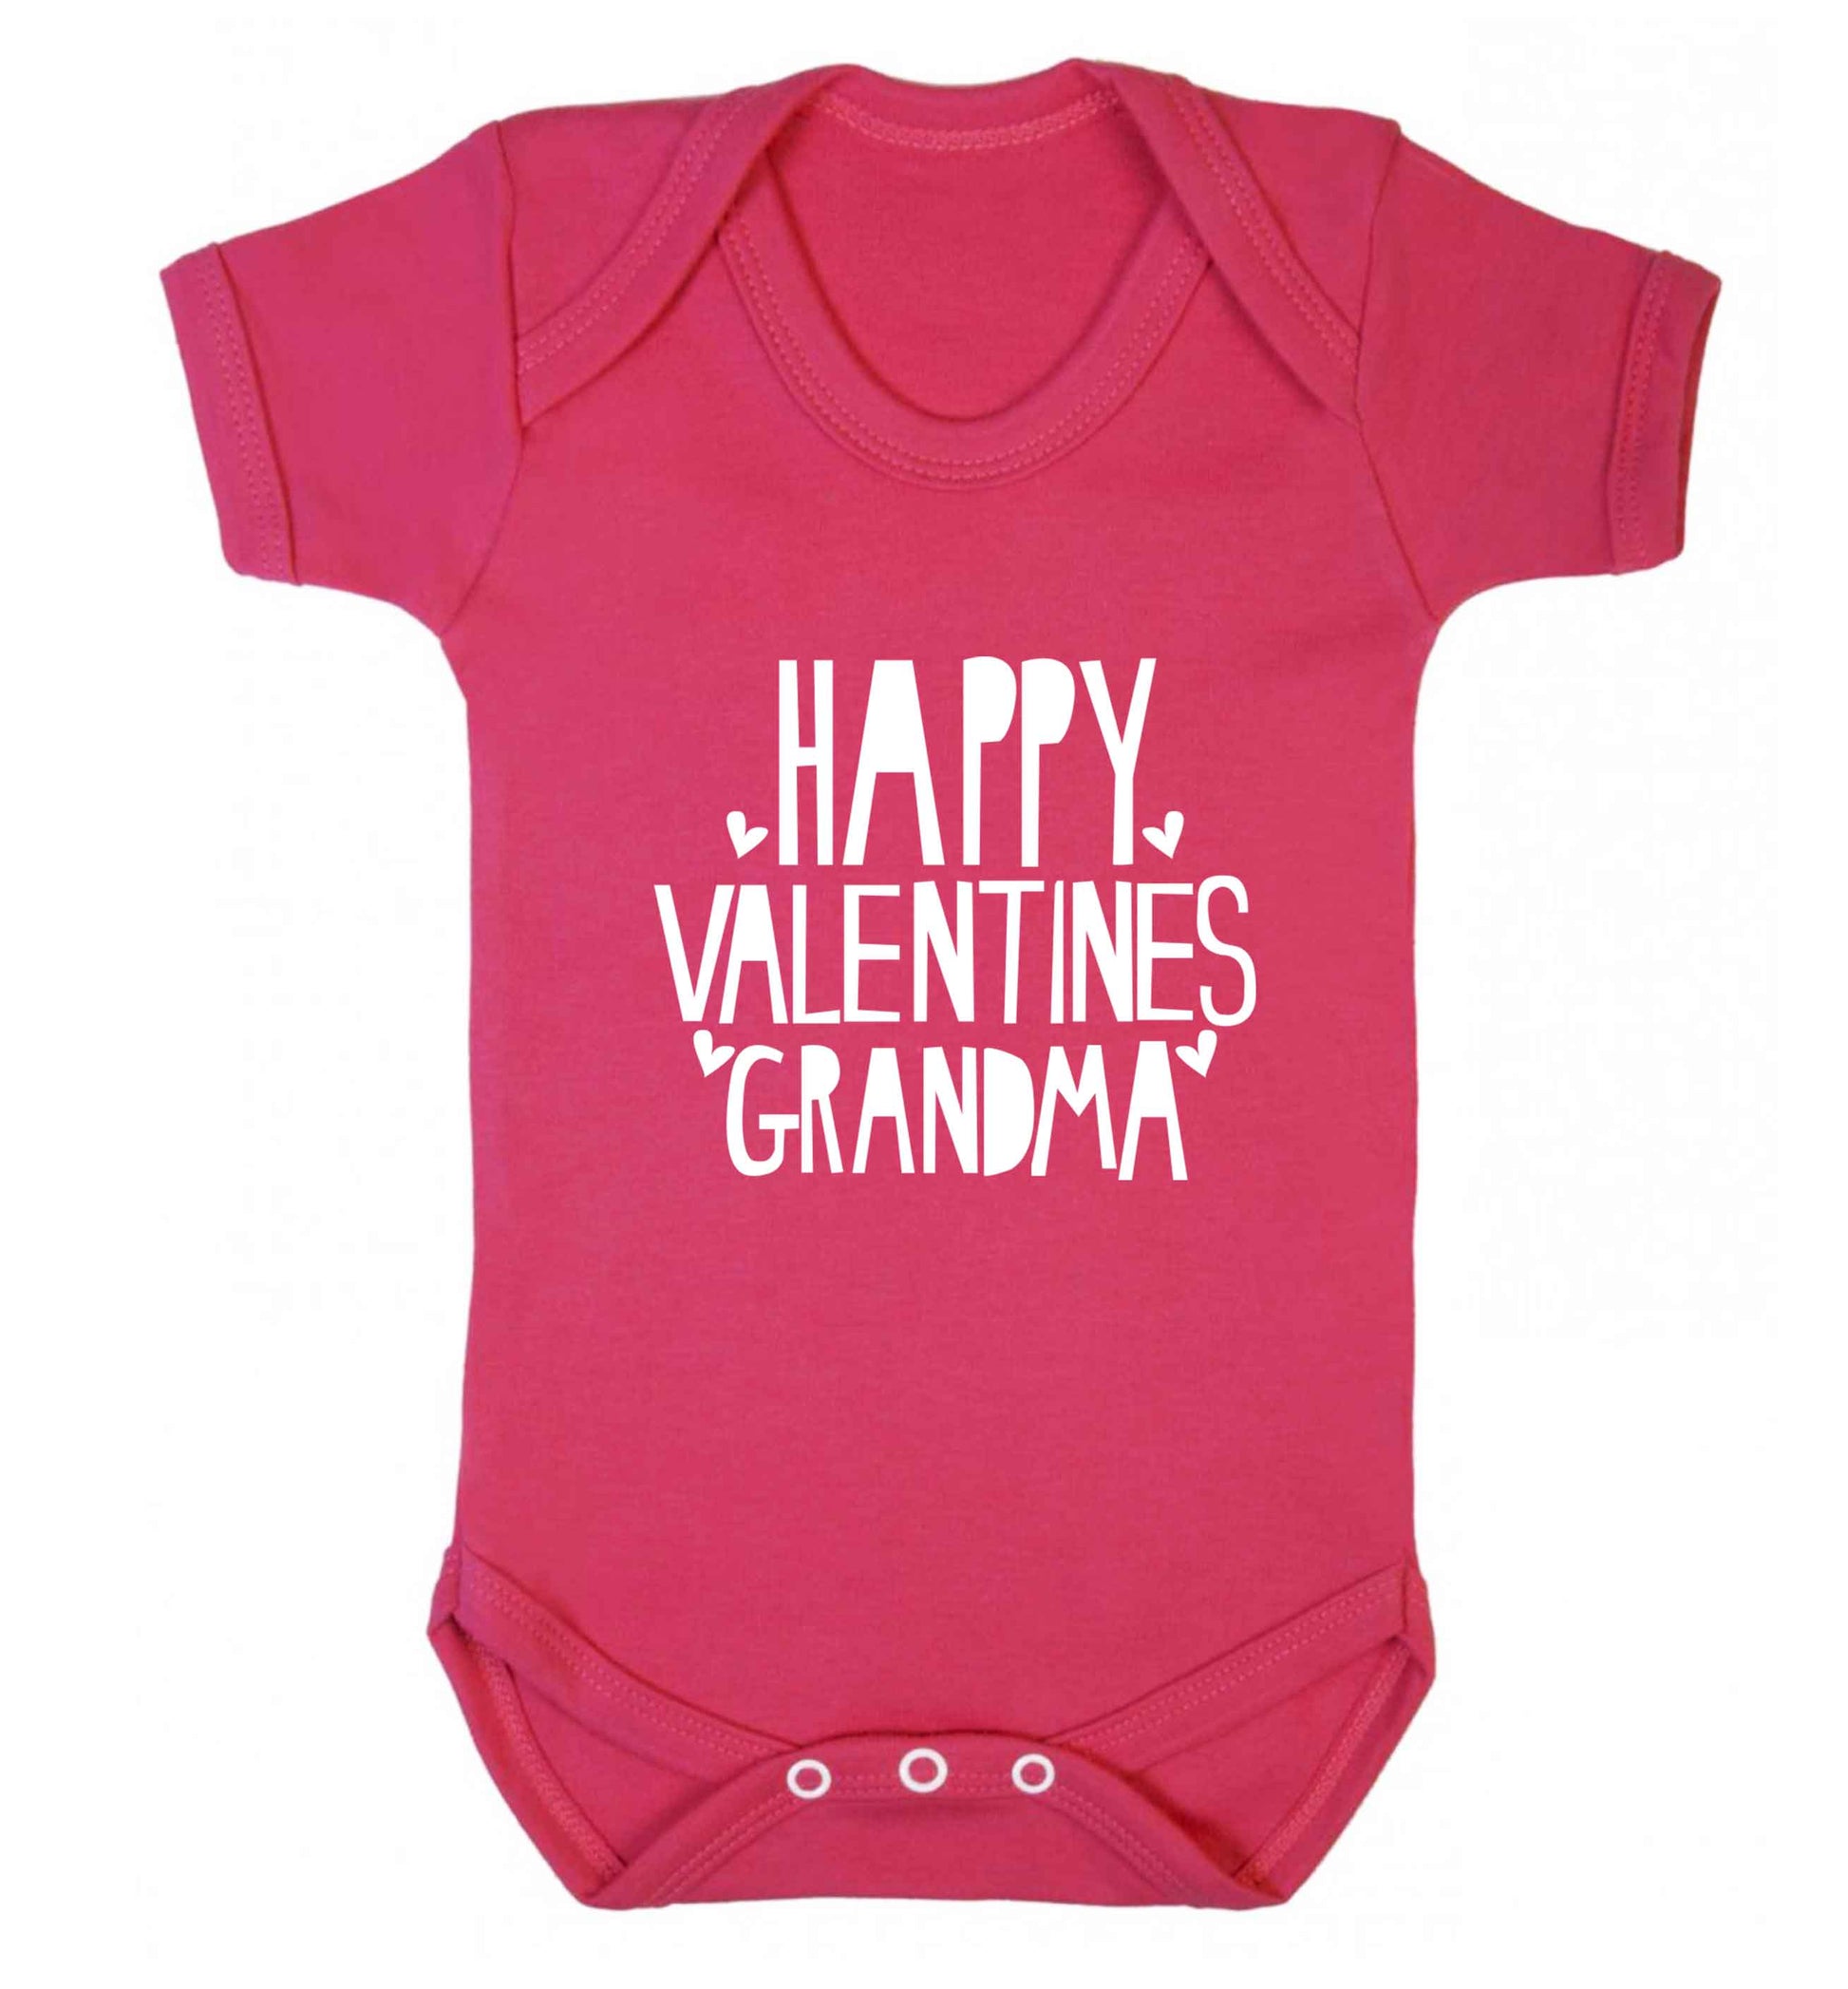 Happy valentines grandma baby vest dark pink 18-24 months